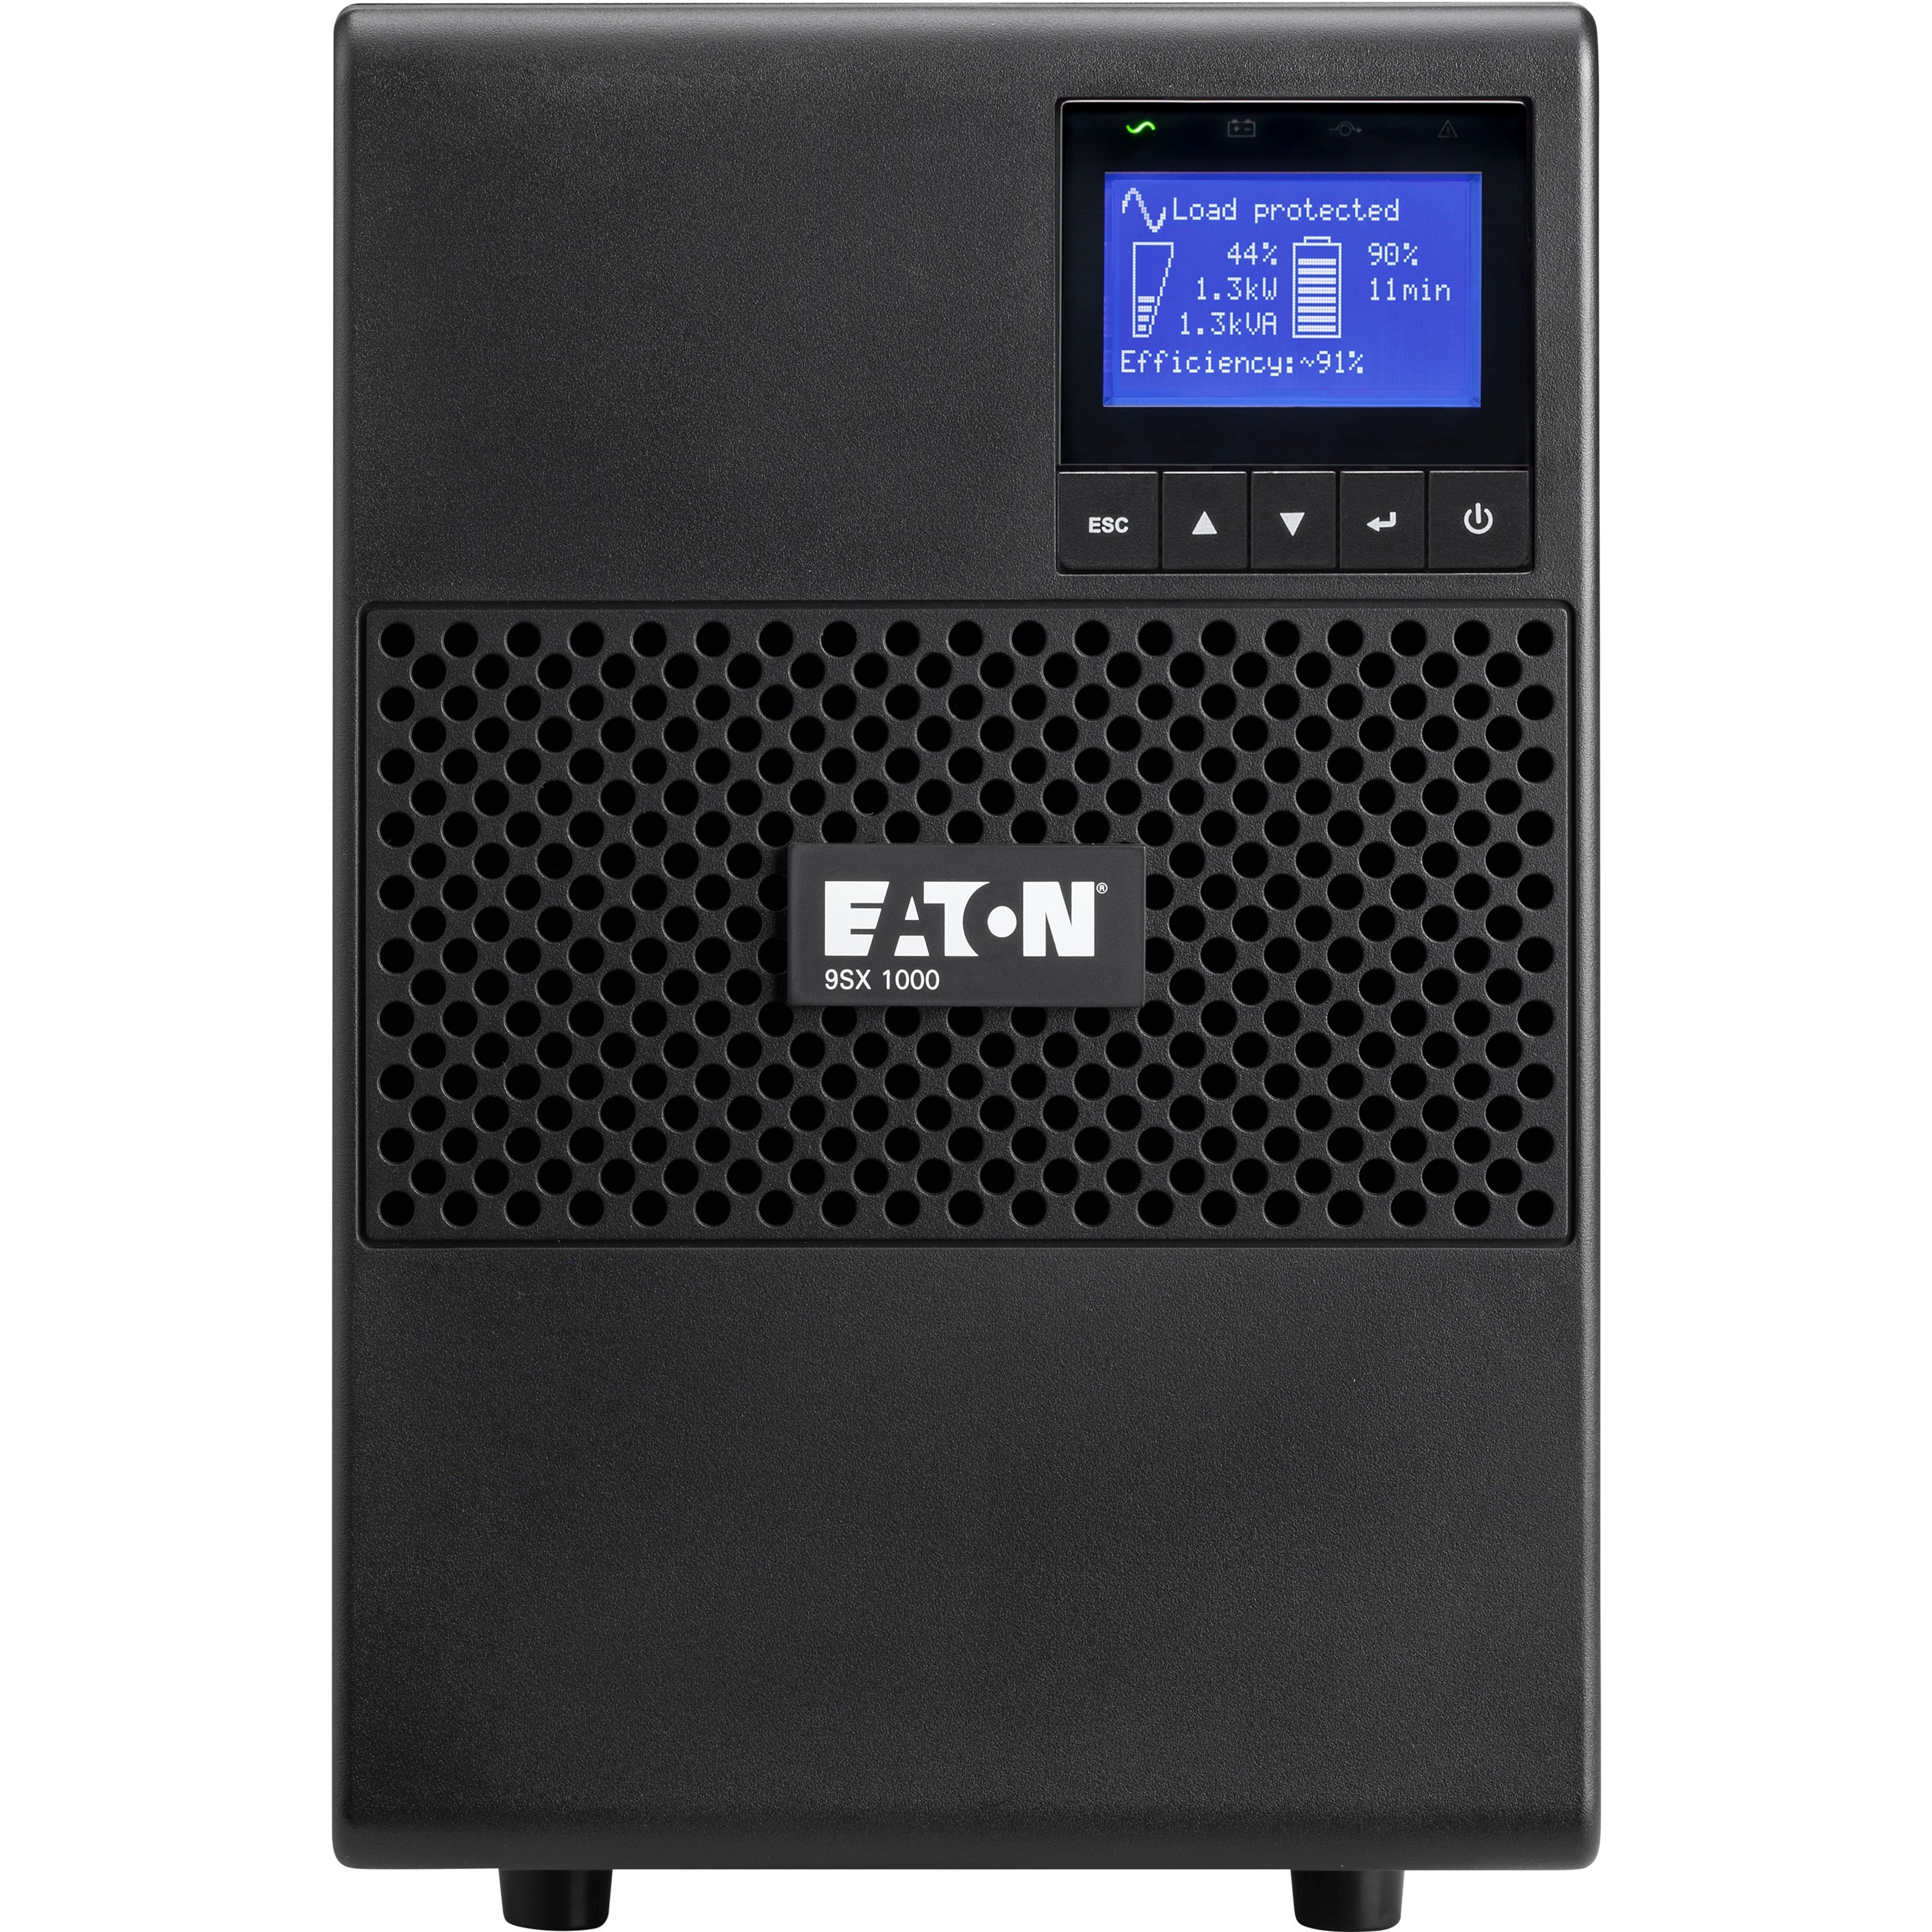 Eaton 9SX1000G 1000VA Tower UPS, 208/208V, 5.90 Minute Backup Time